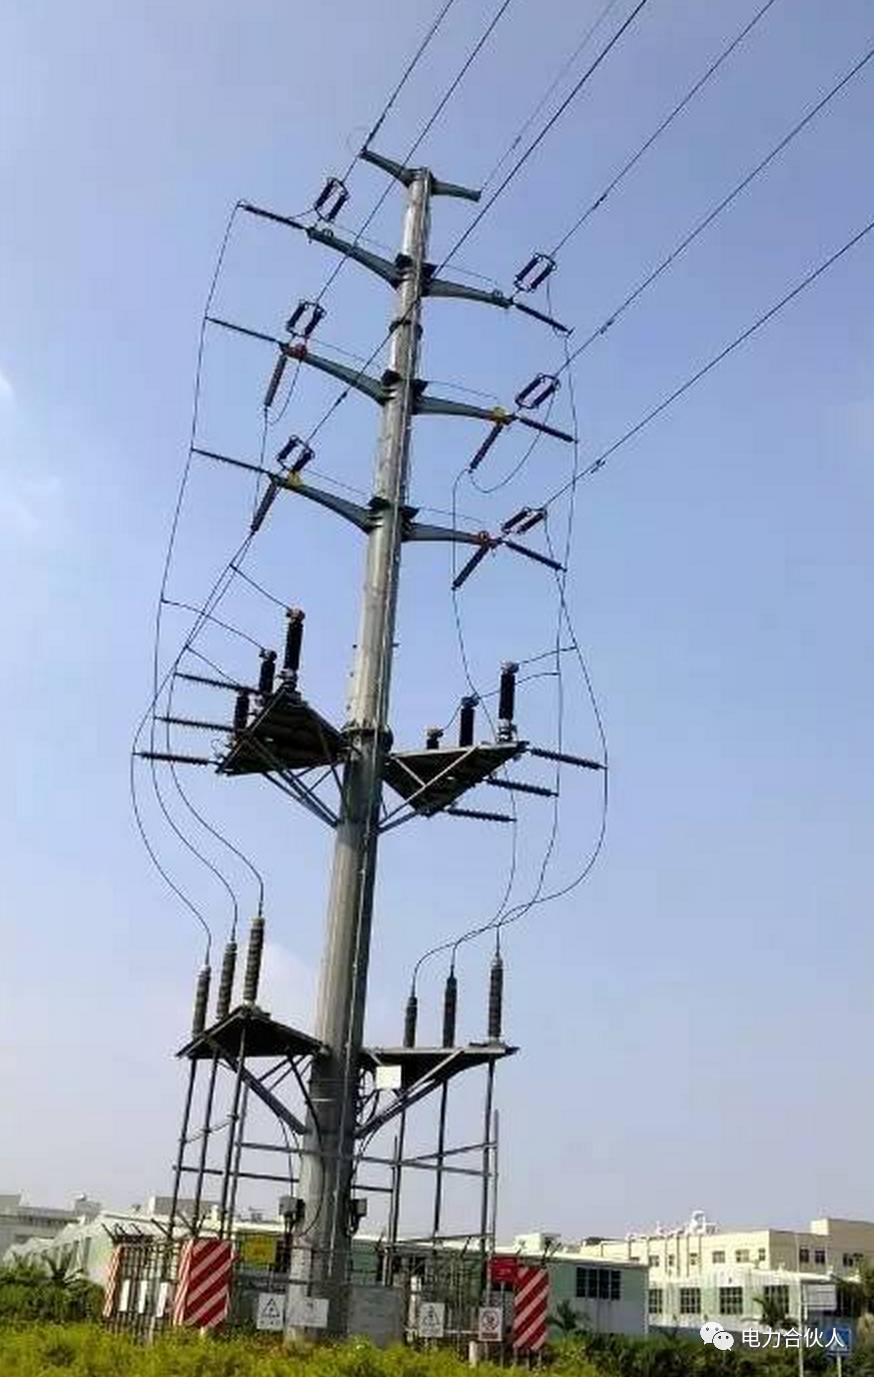 输电线路各种电缆终端杆塔 ,你能分清楚吗?